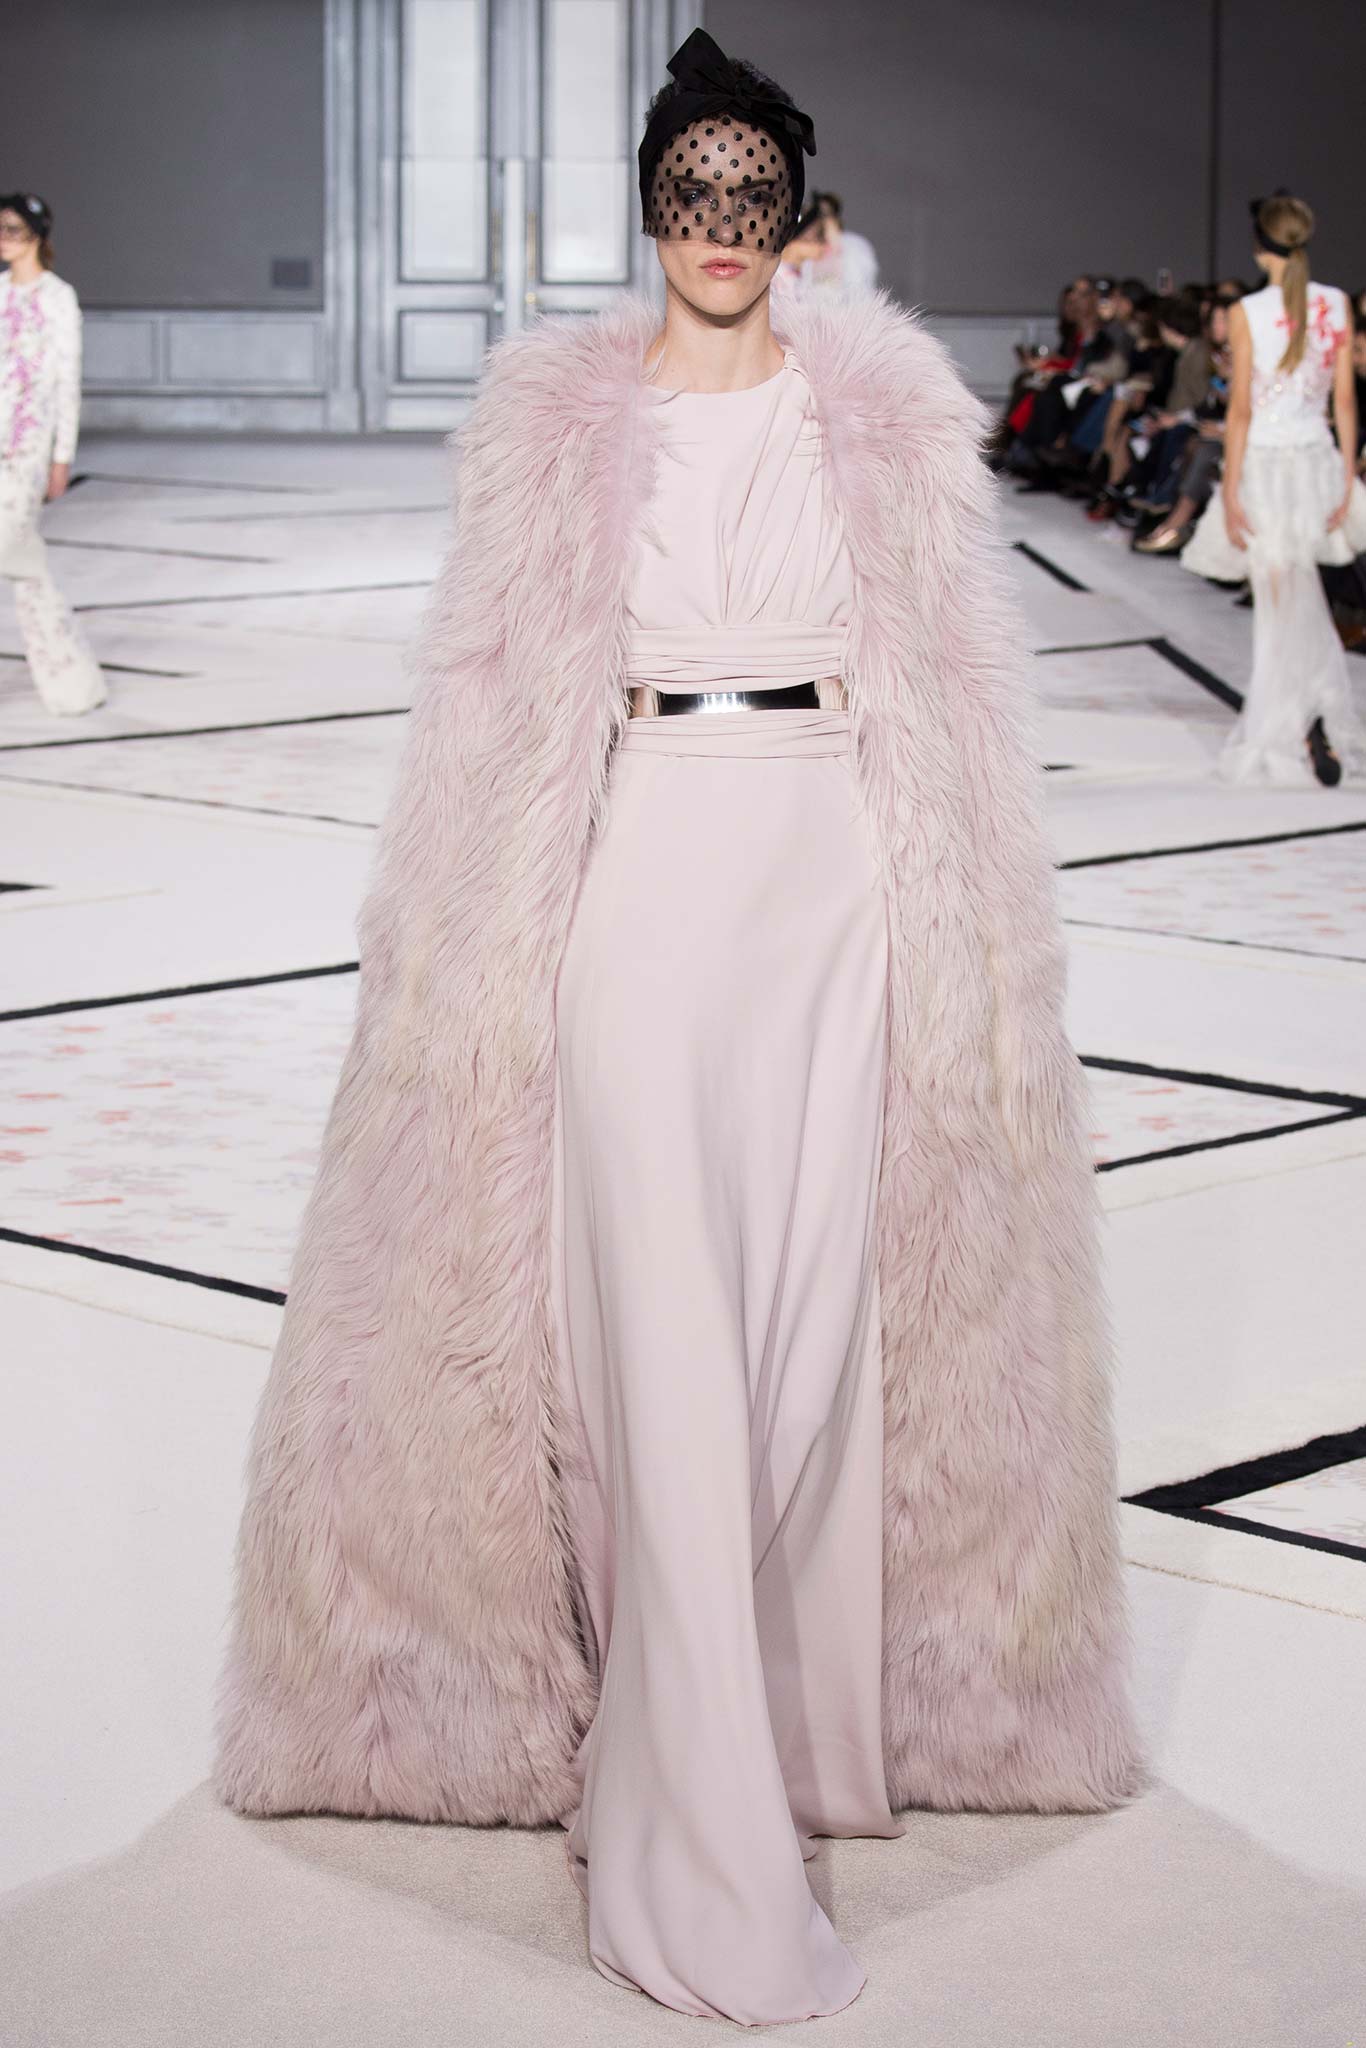 valli white dress parigi haute couture 2015